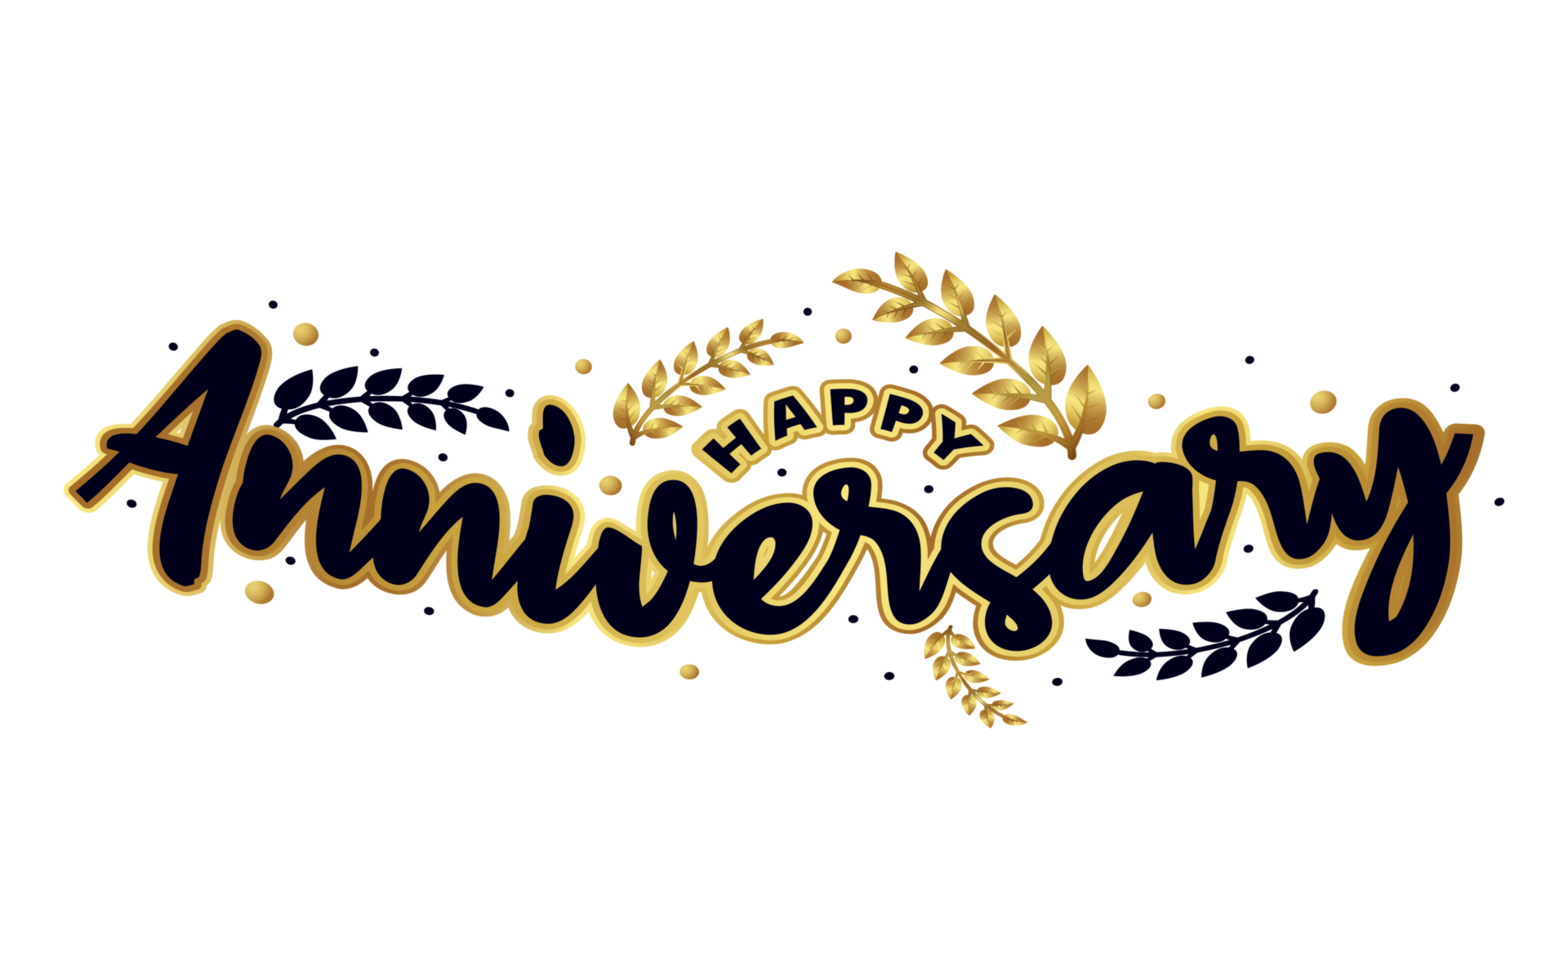 Happy Anniversary Png Typography in golden laurel wreath design 1